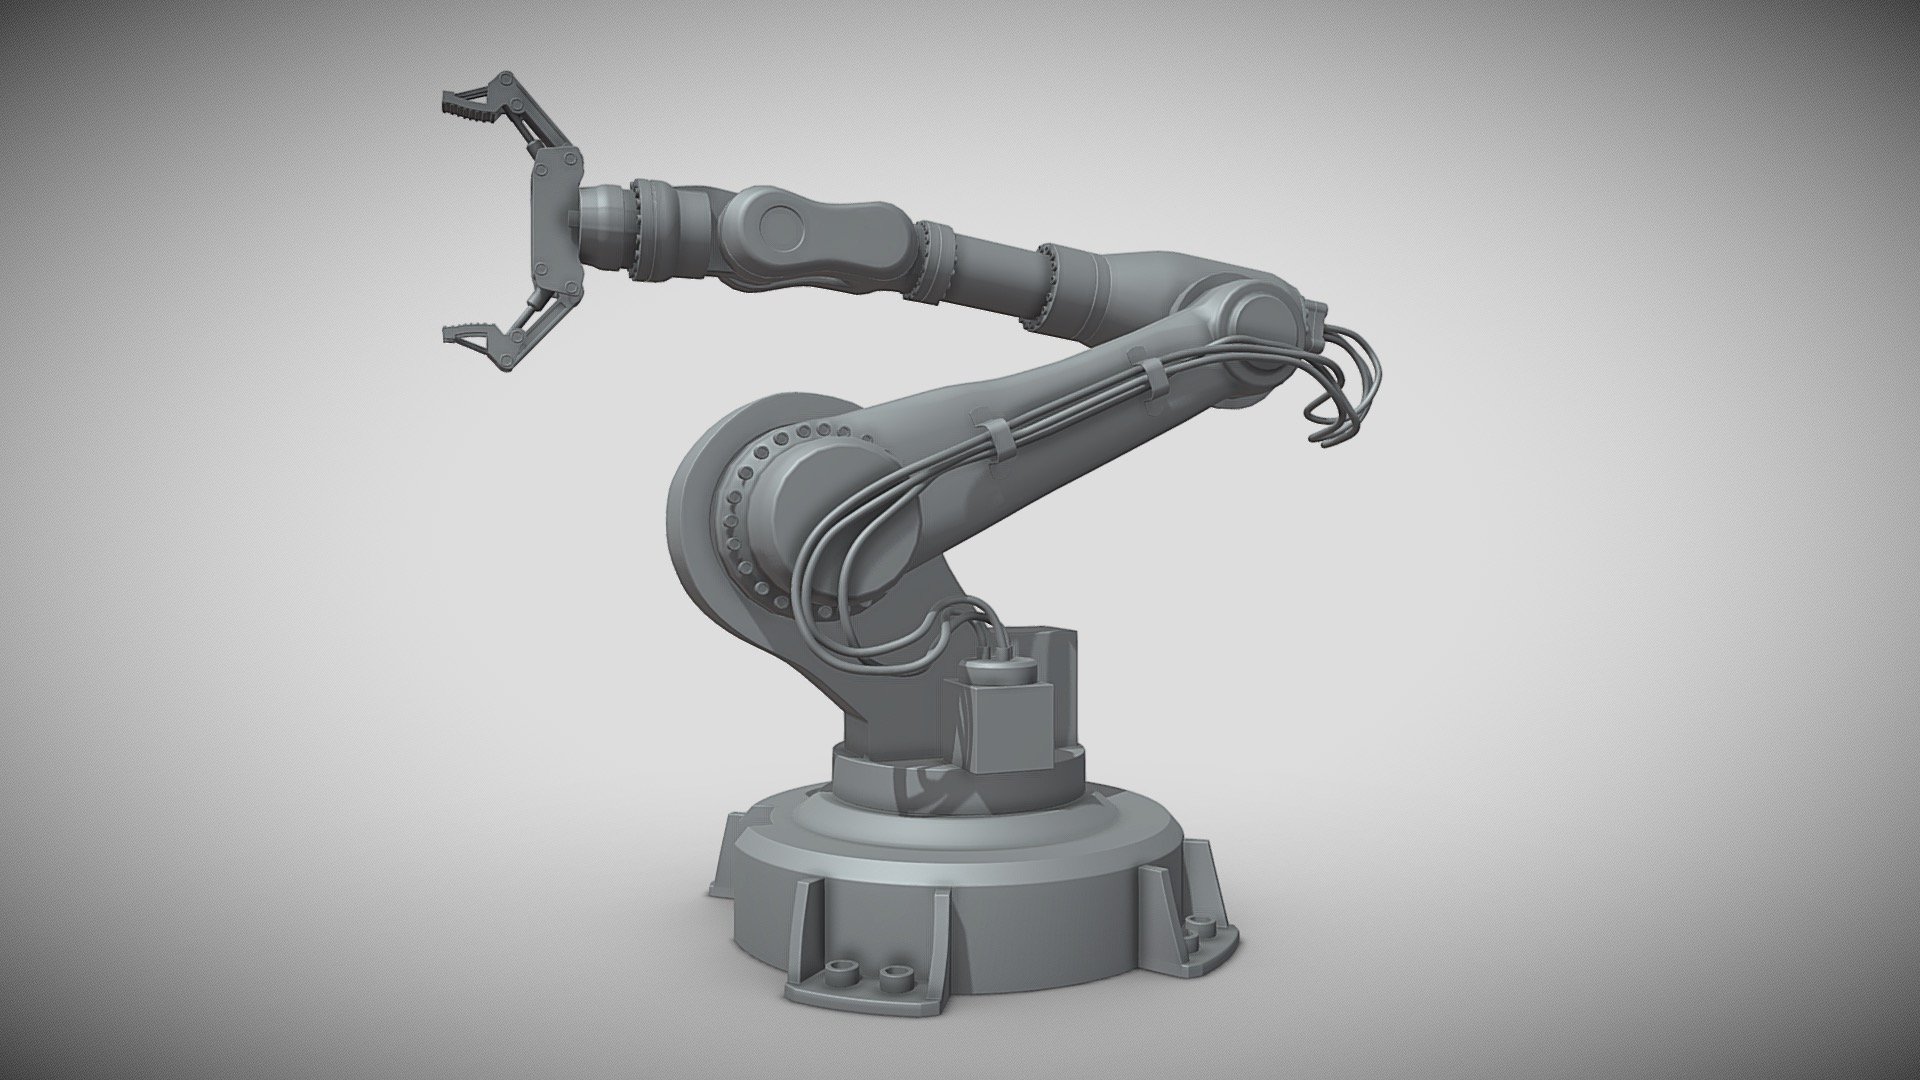 Robotic Arm 1 - 3D model by navarro.tenyo 3d model